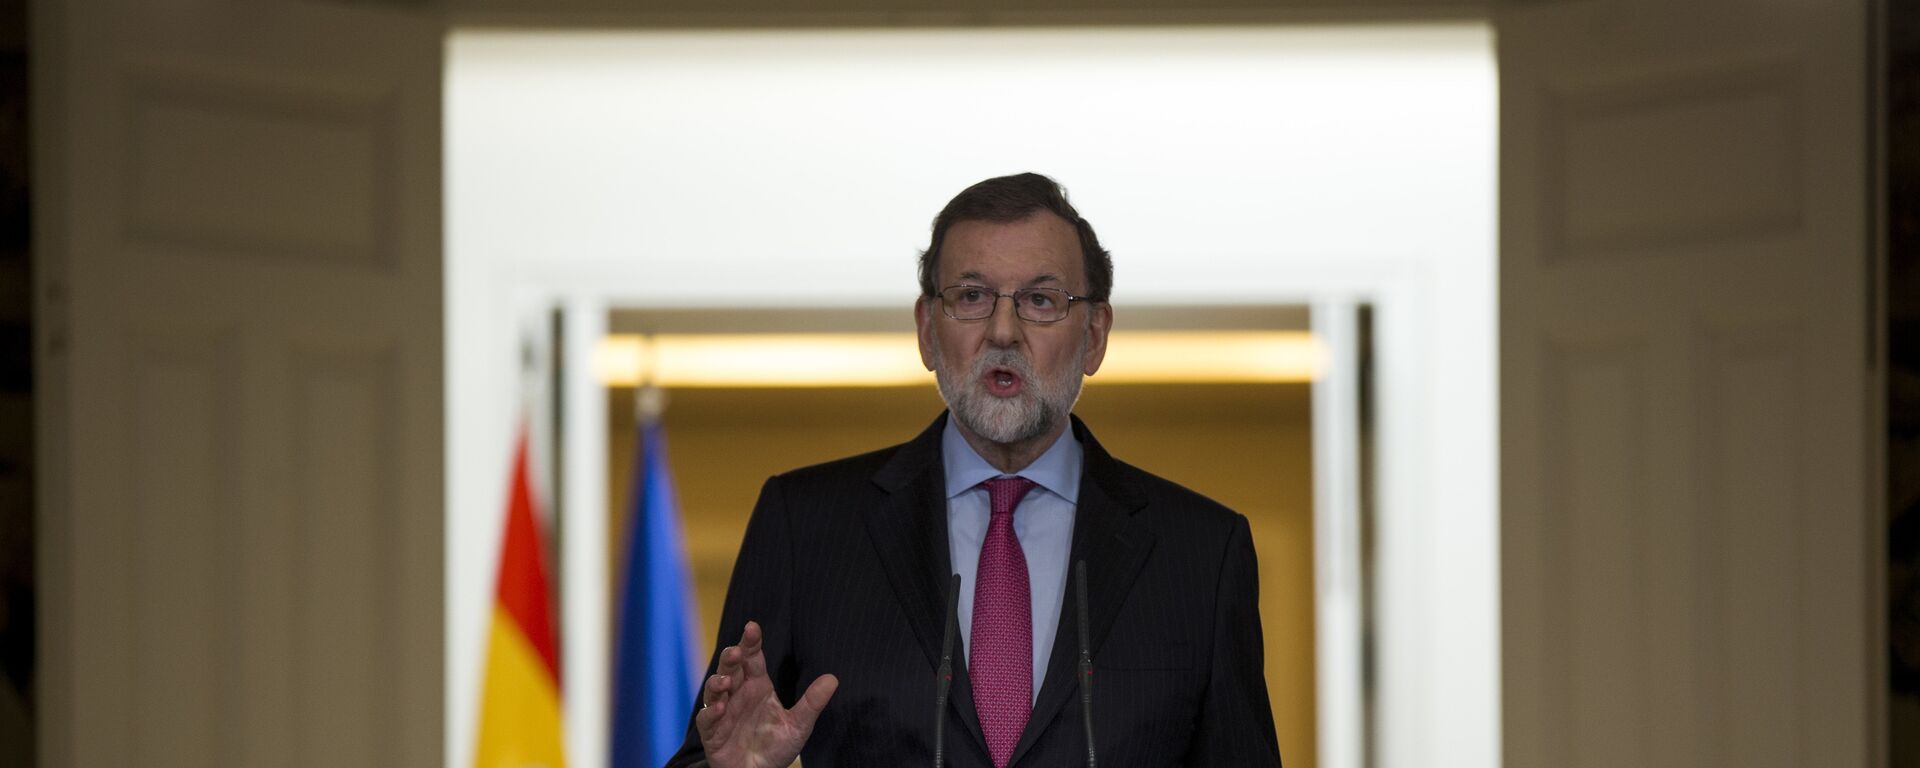 Mariano Rajoy, el presidente del Gobierno español - Sputnik Mundo, 1920, 08.03.2021